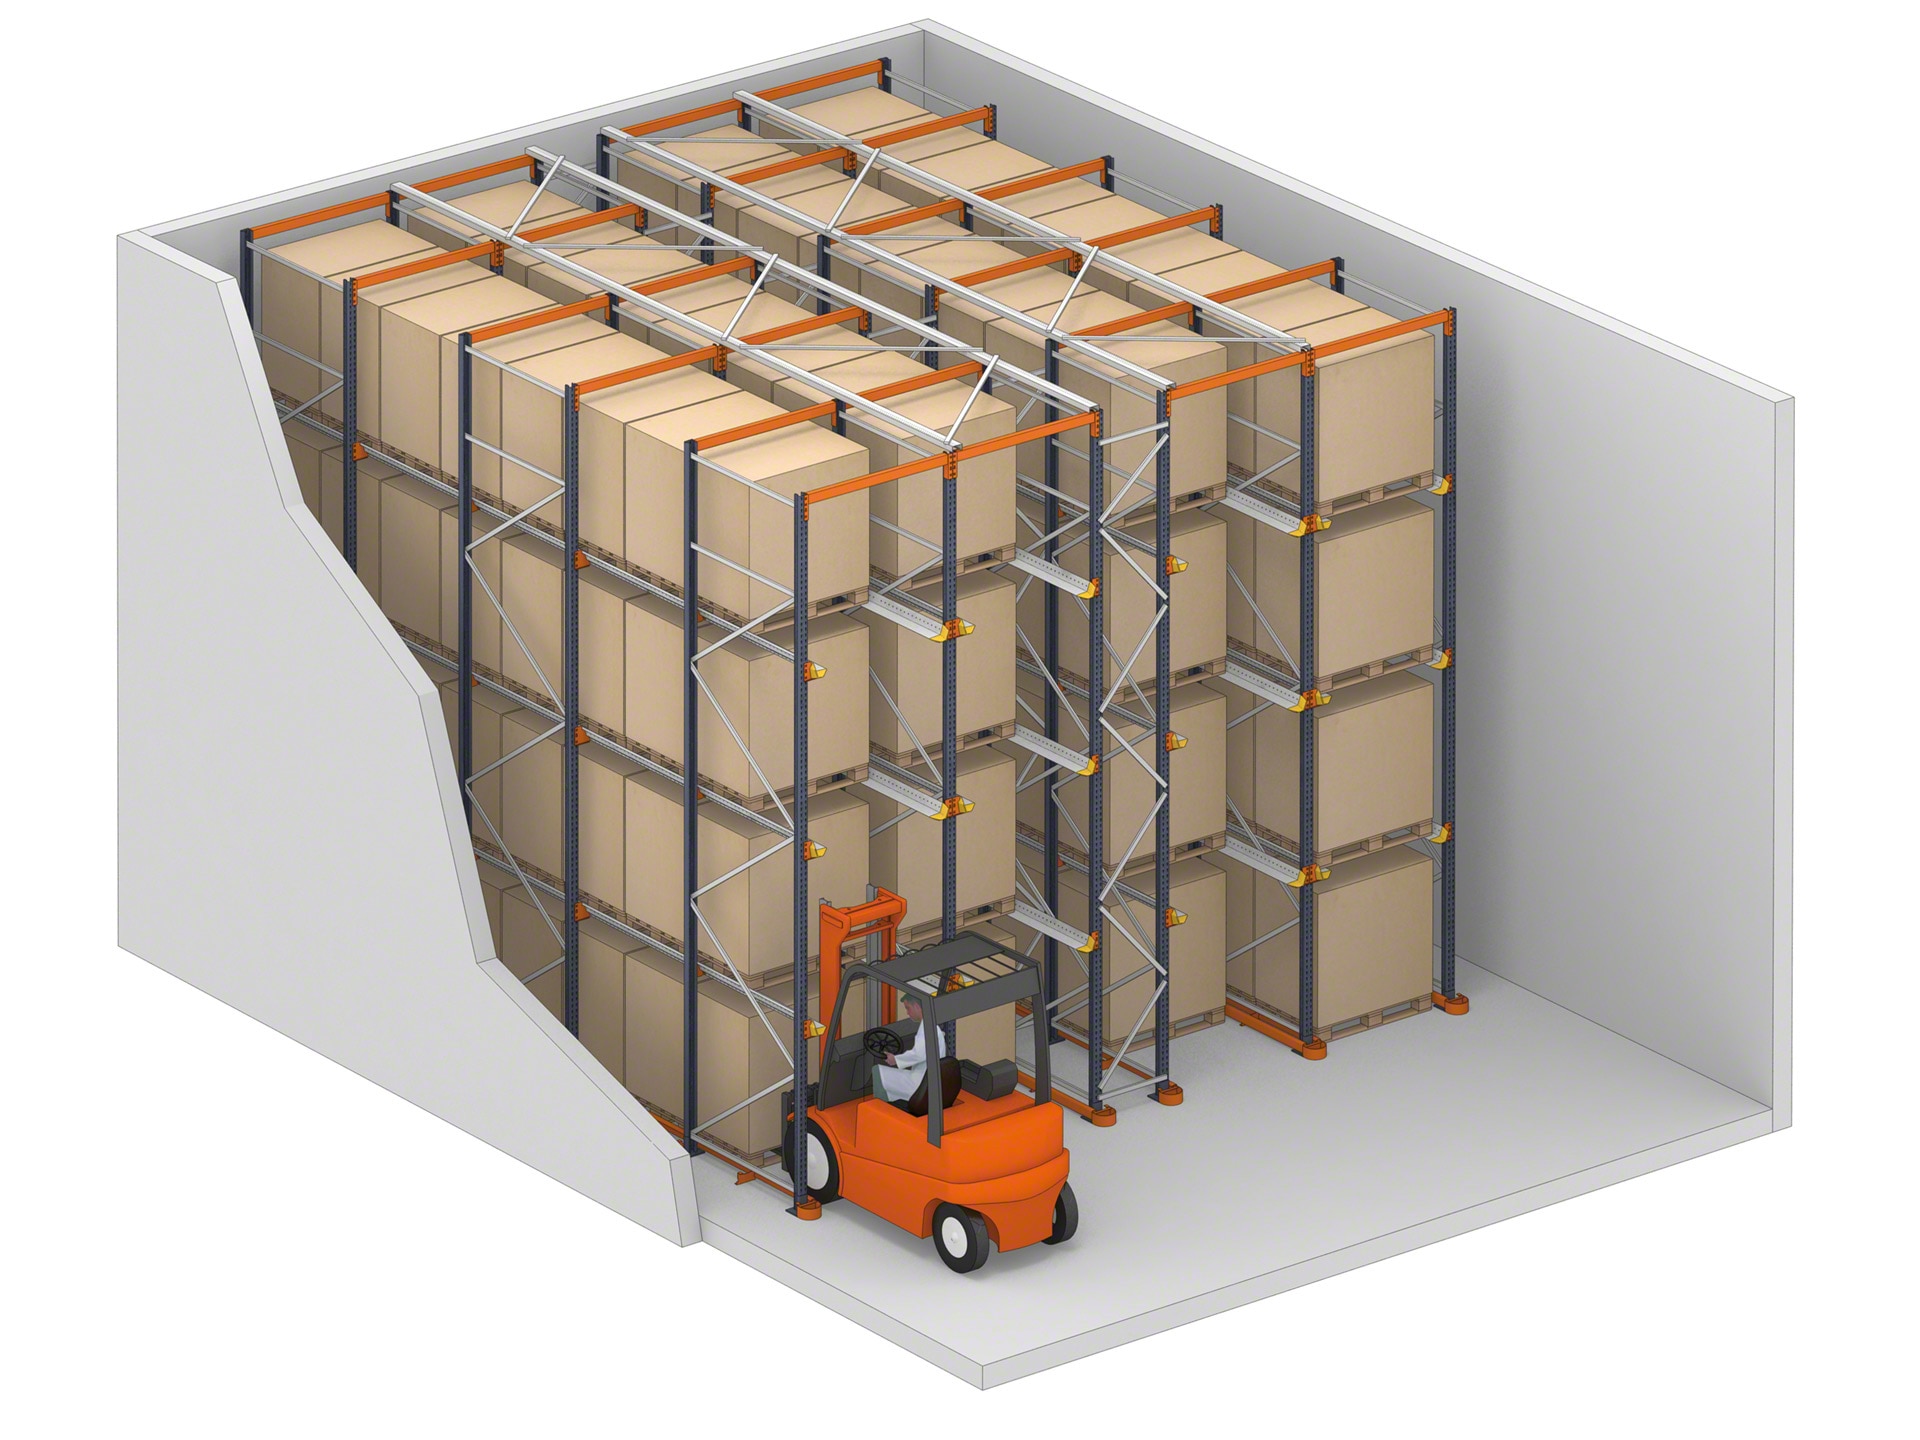 El sistema drive-in son racks en los que los montacargas pueden acceder a la mercancía por sus canales de almacenaje